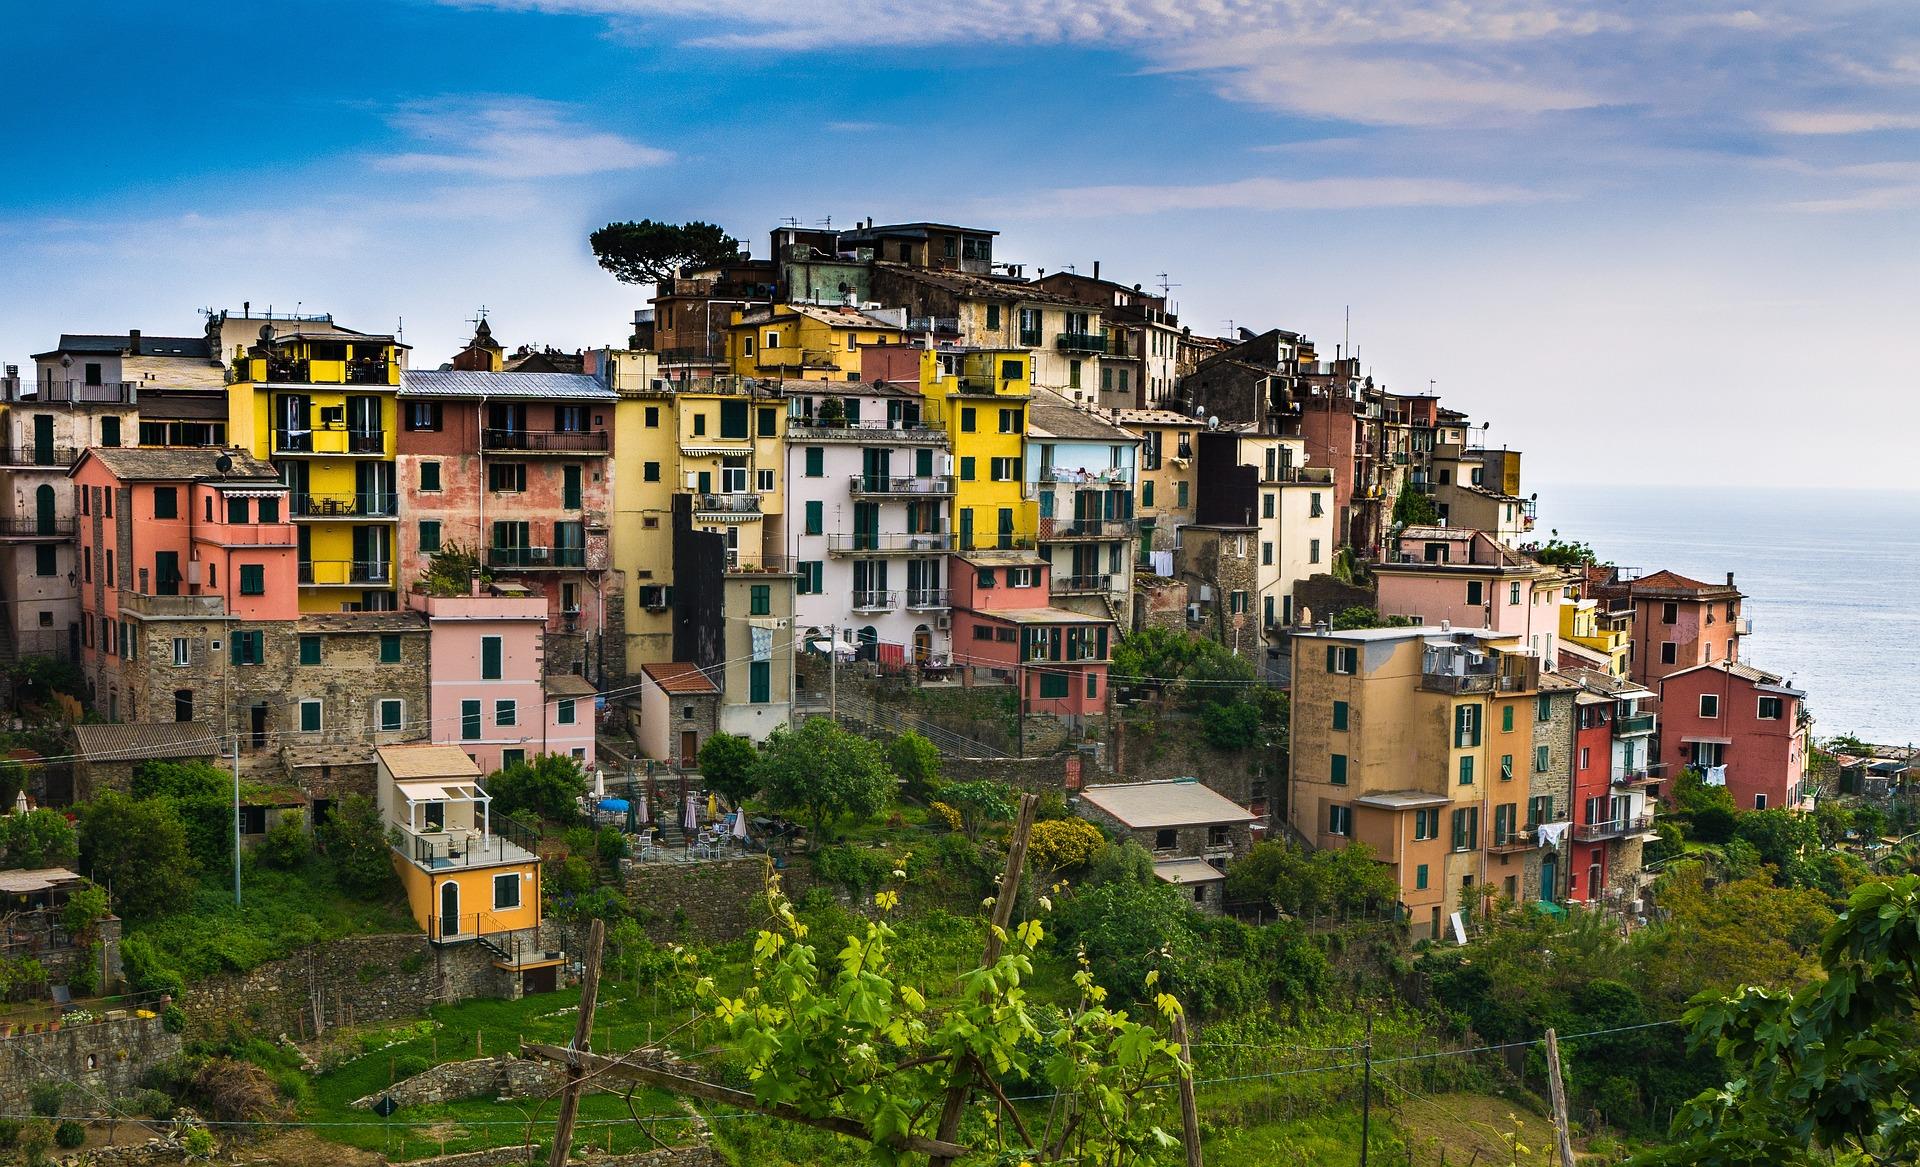 Foto panoramica di Corniglia che mostra le sue case alte e colorate